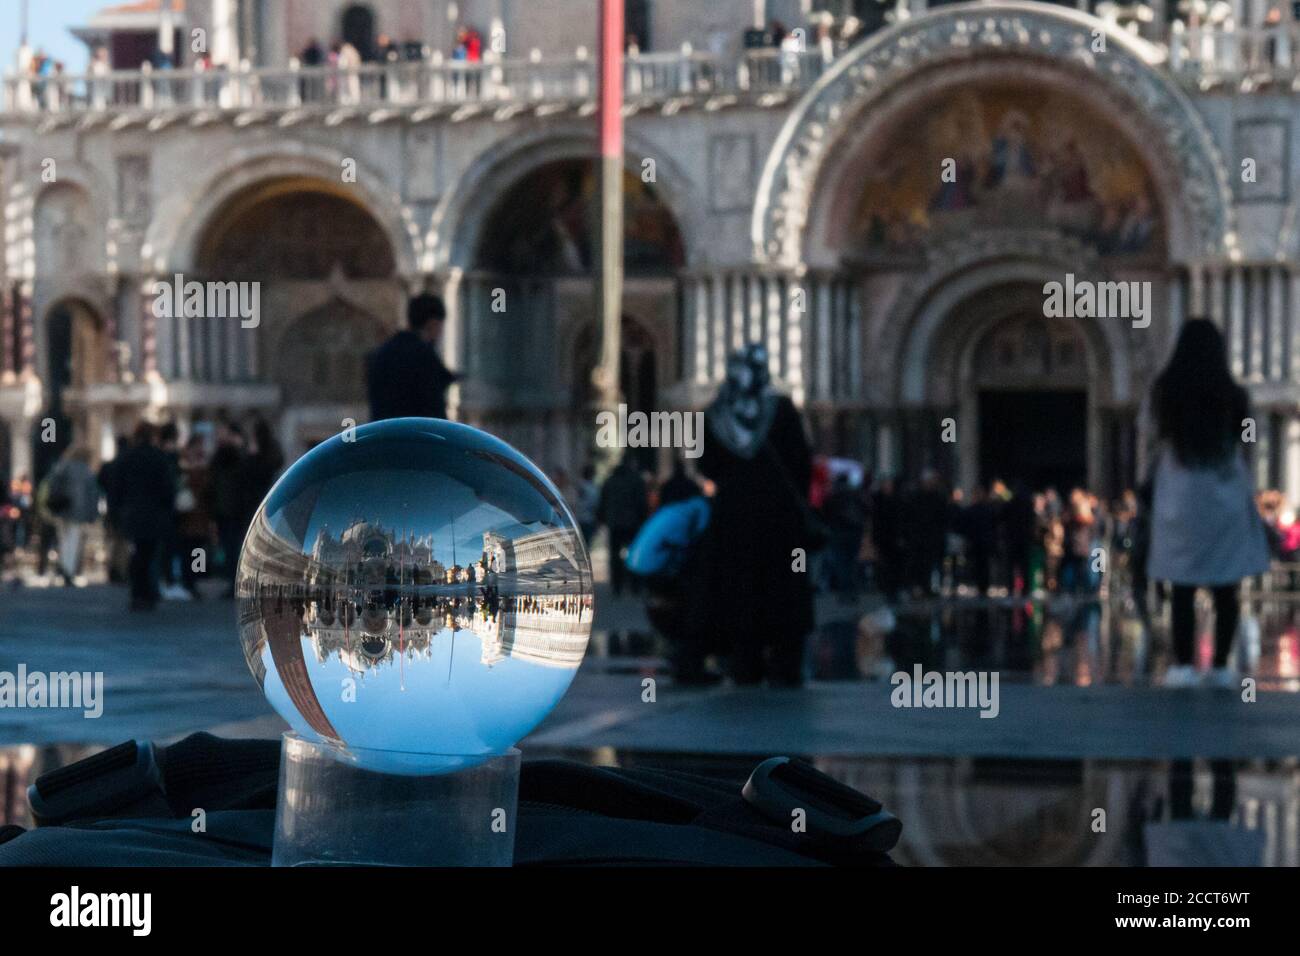 VENECIA, ITALIA - 20 DE NOVIEMBRE de 2017: La Iglesia de San Marco y una pieza de la Plaza de San Marco, vista a través de una esfera de vidrio Foto de stock